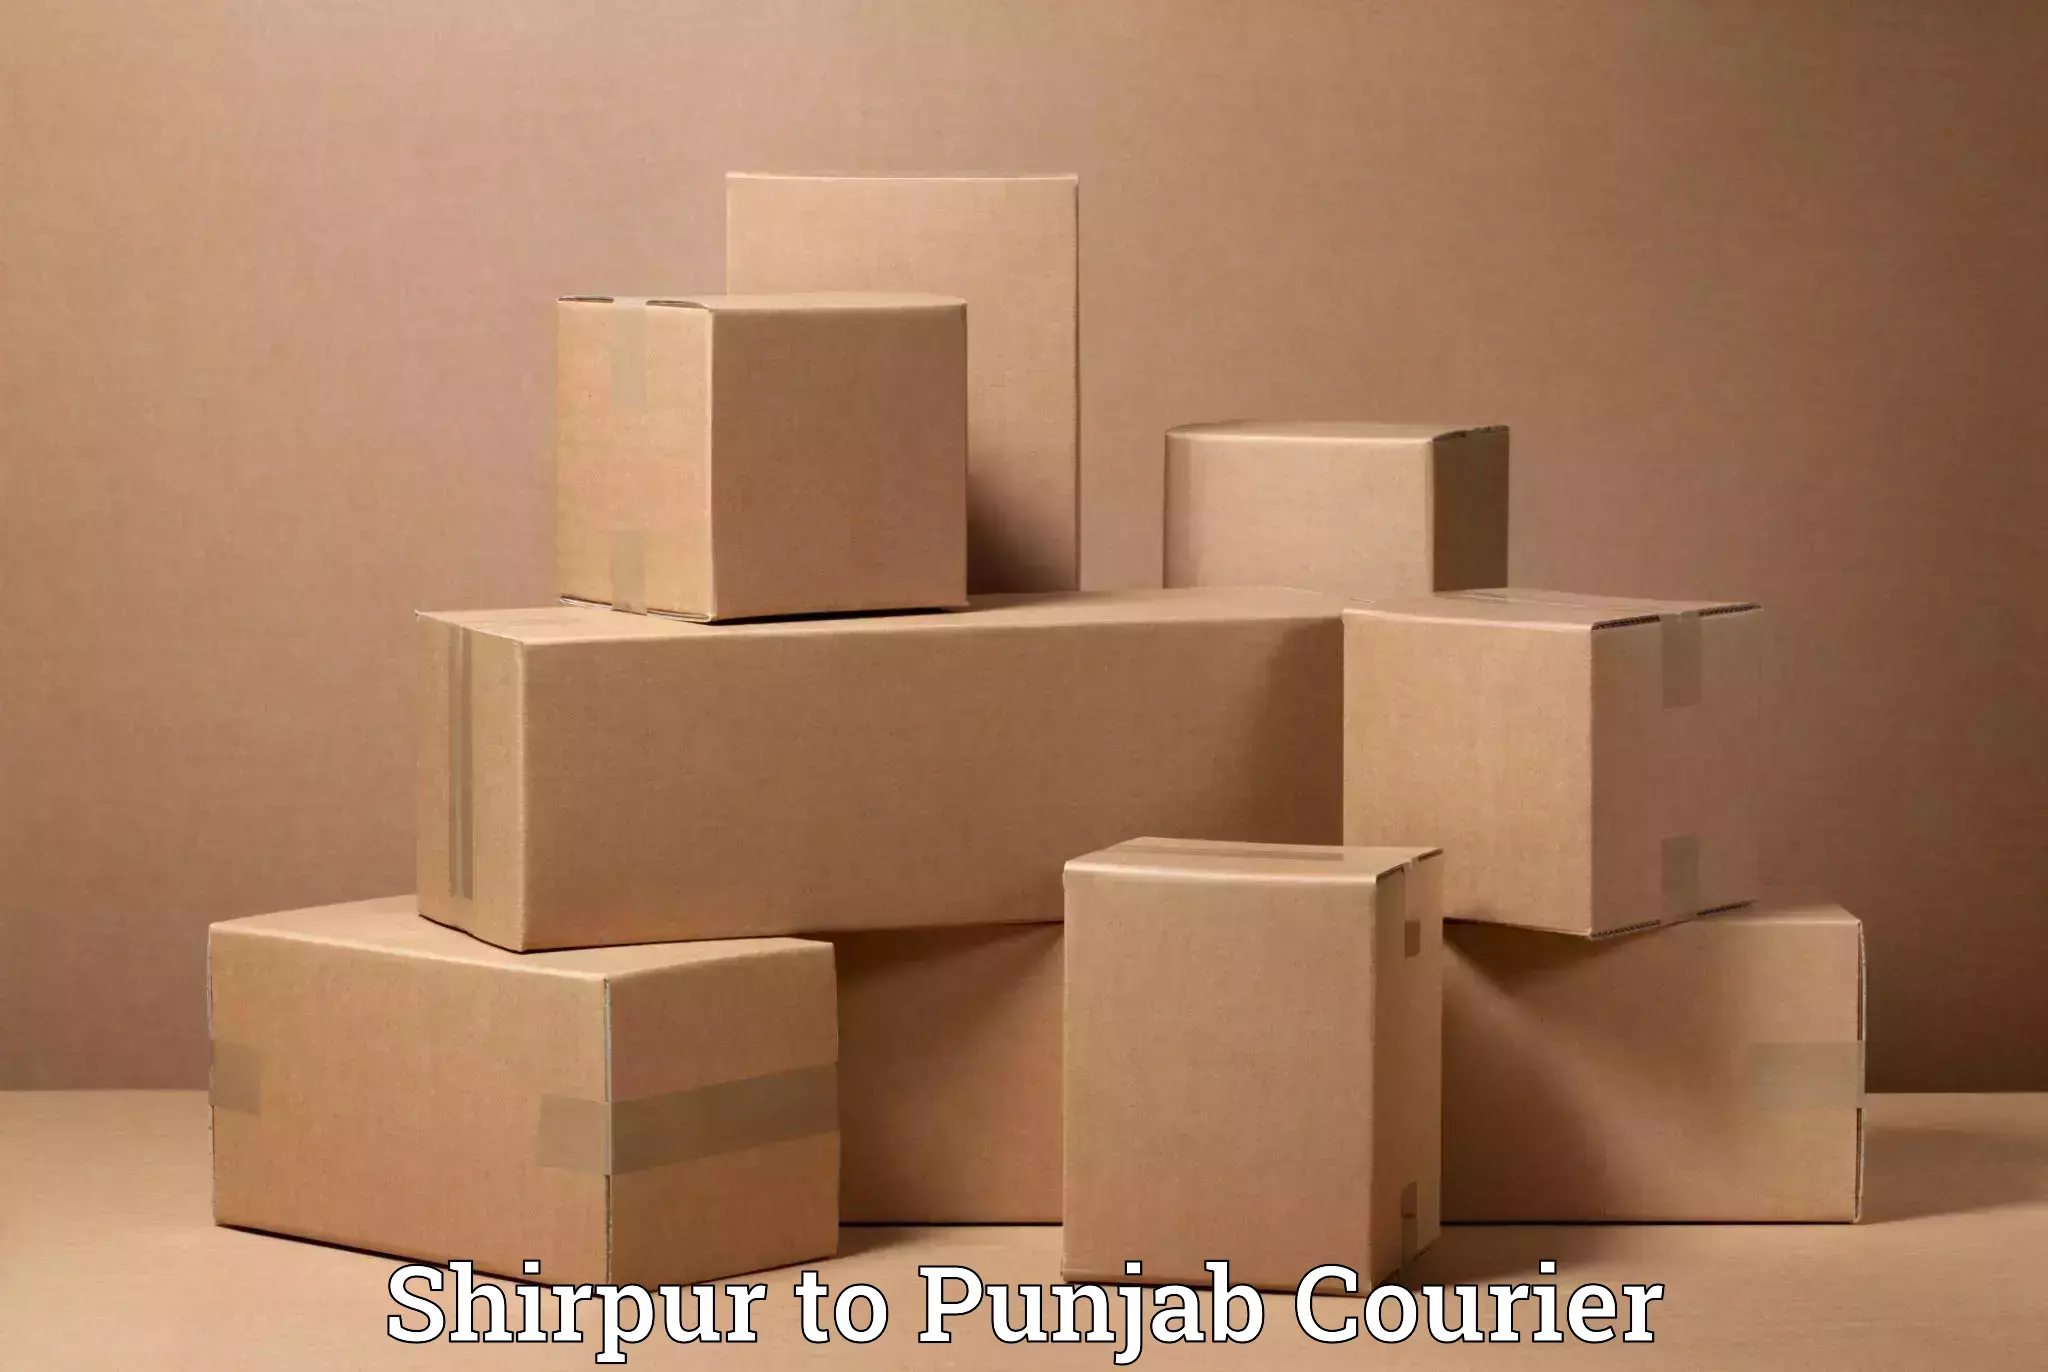 Skilled furniture transporters Shirpur to Punjab